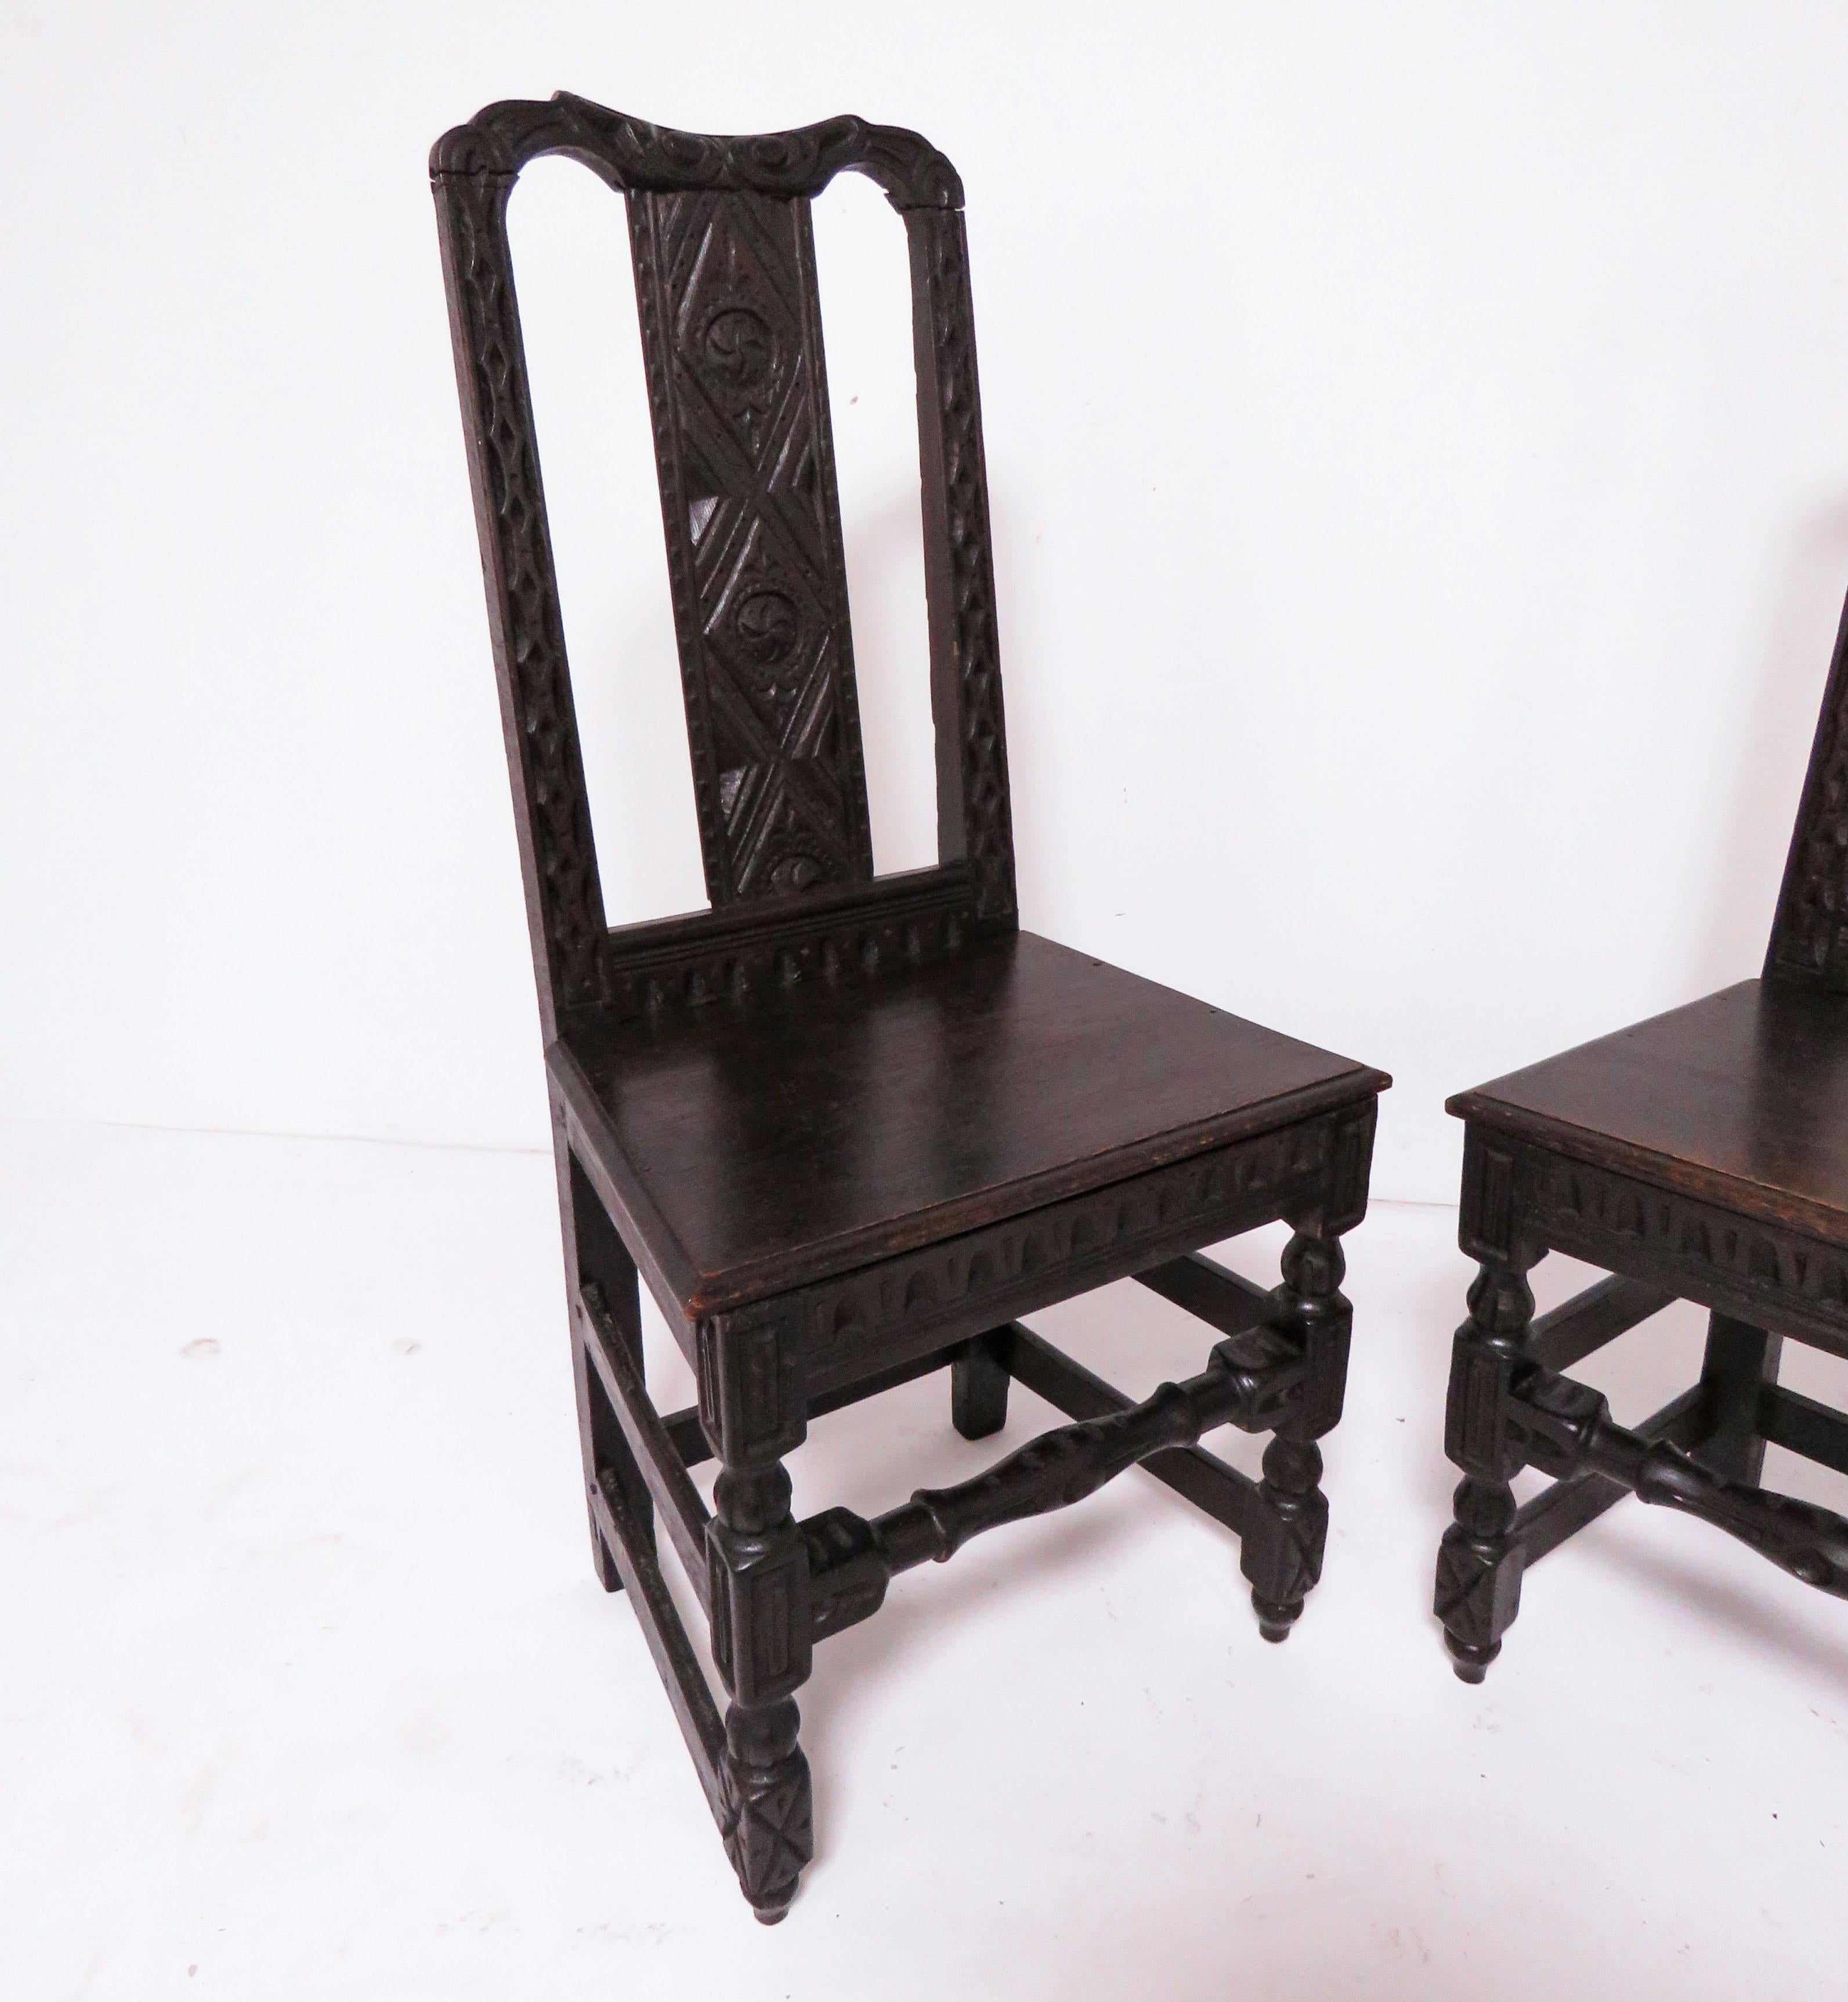 Une paire de chaises latérales flamandes sculptées avec goût en noyer ébénisé, datant du deuxième quart du XIXe siècle.

En raison de leur nature artisanale, il existe de très légères différences dans leurs mesures générales. Il mesure 18,5